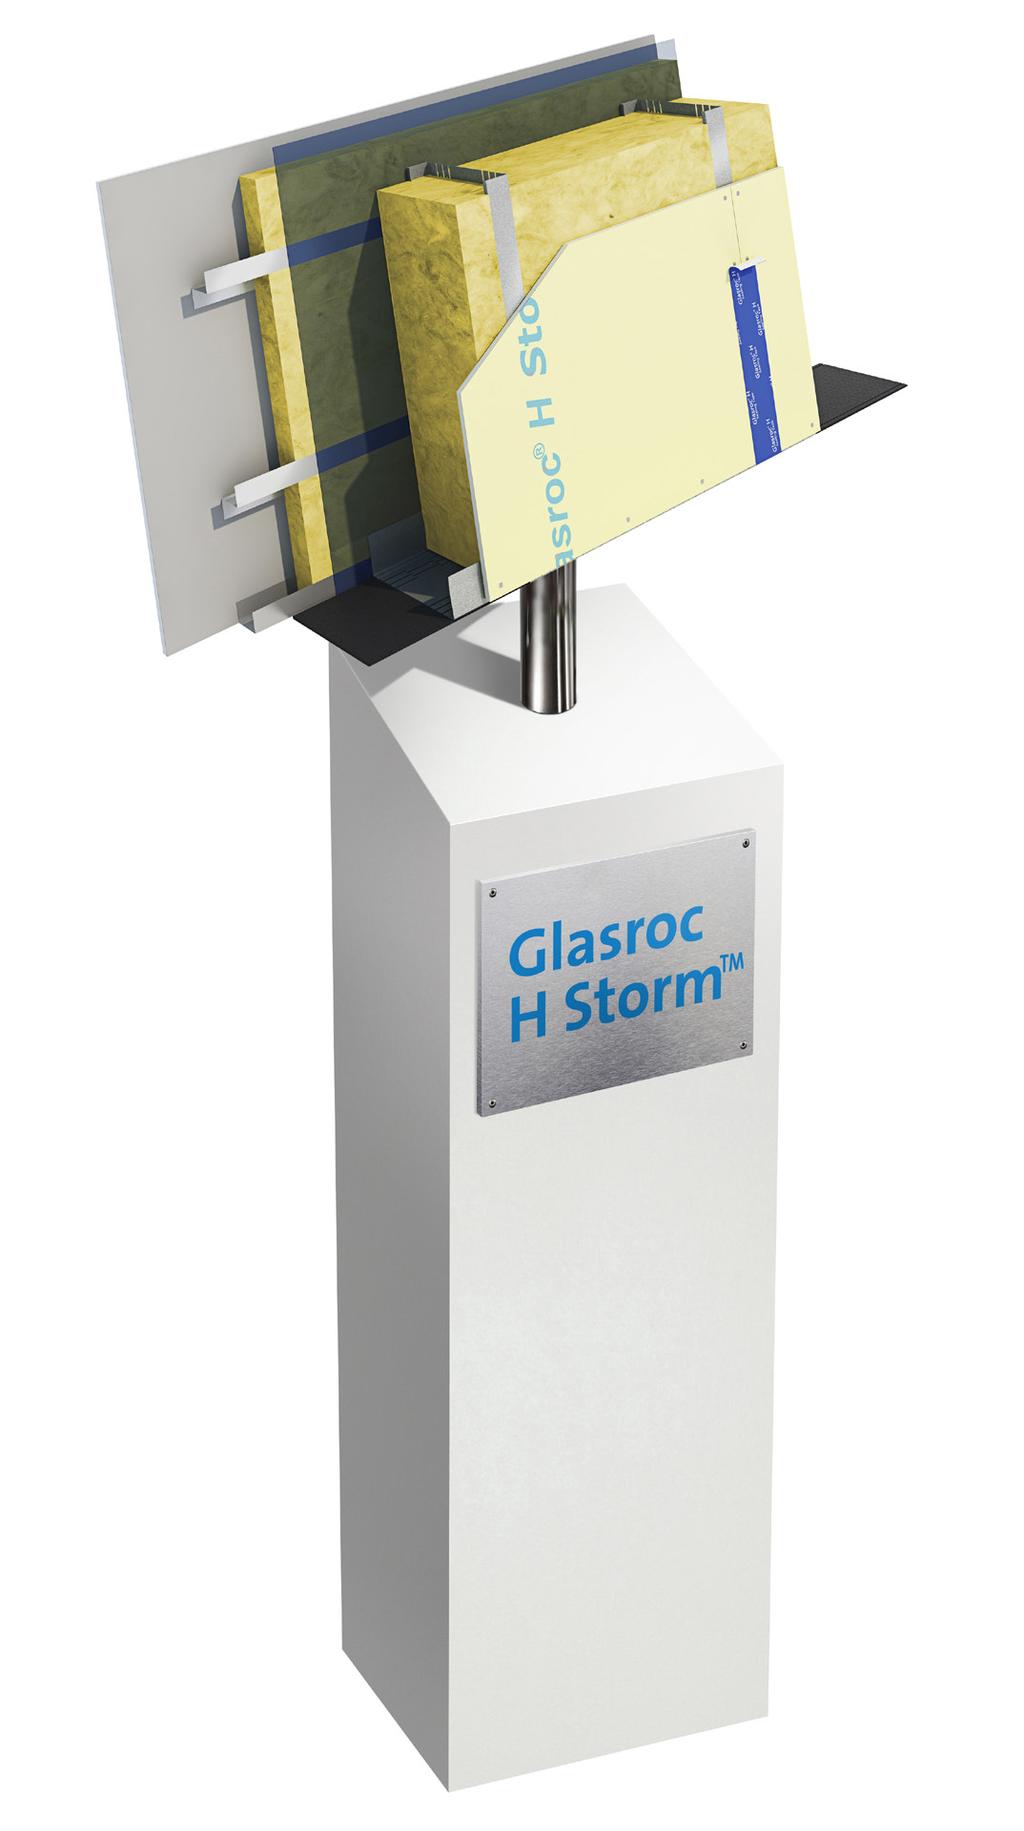 Glasroc H Storm vindskyddssystem består av vindskyddsskivan Glasroc H Storm samt ett sortiment av profiler, tejp och skruvar.